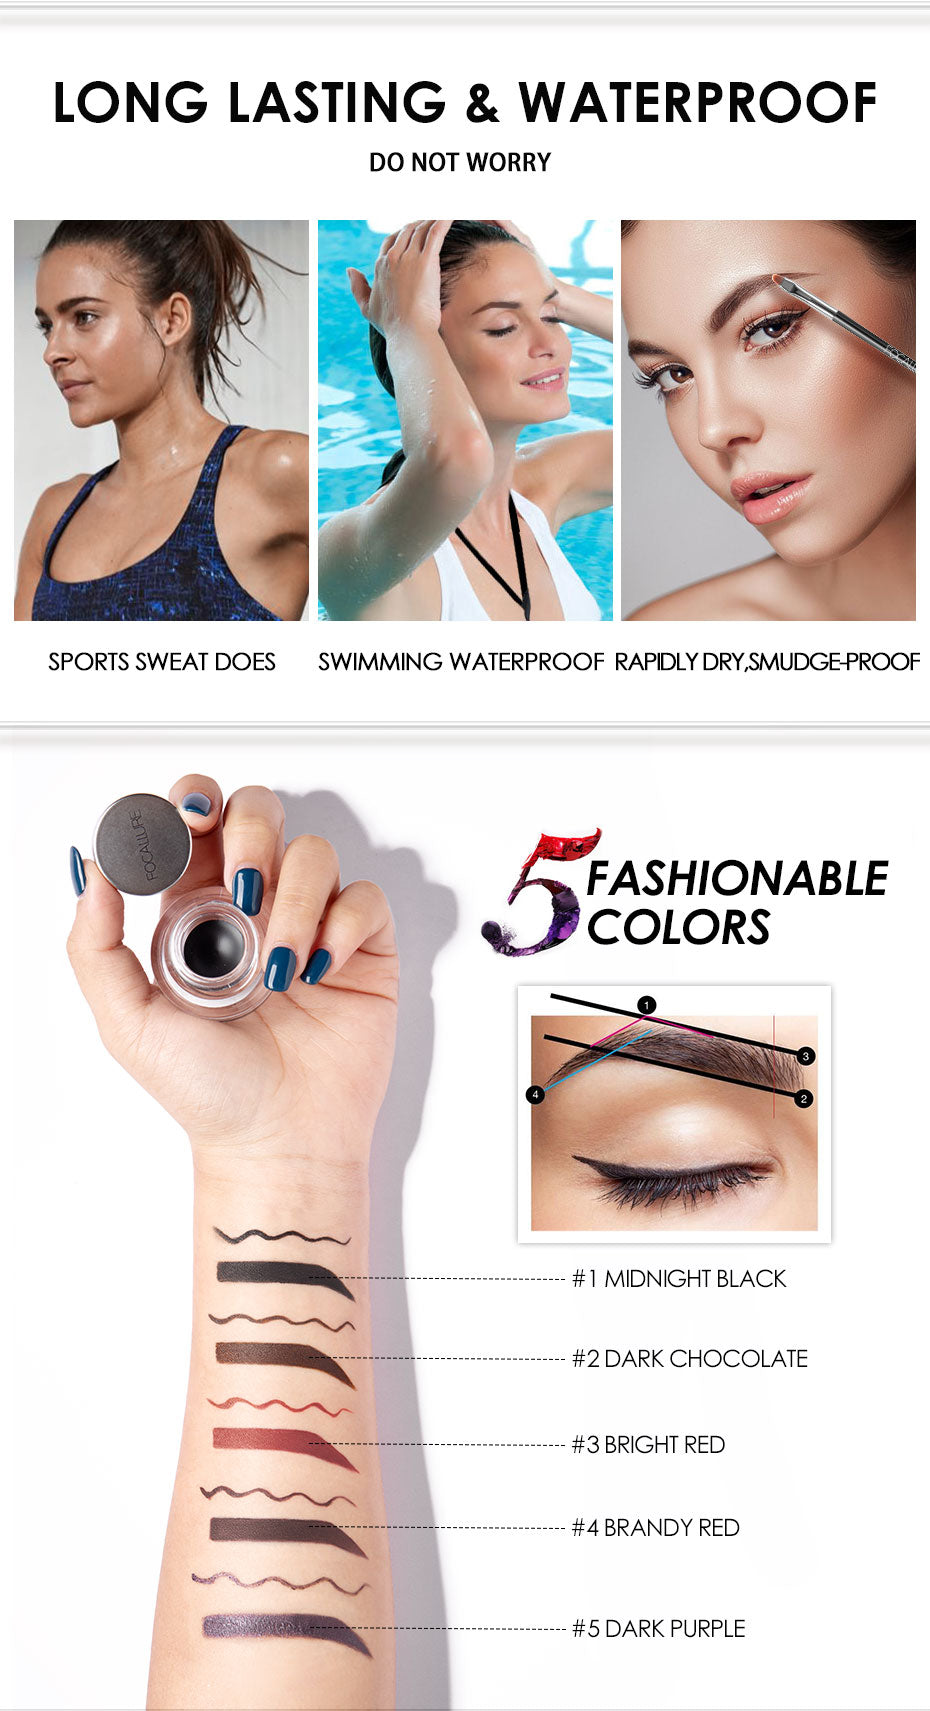 Eyeliner Gel, Eyebrow Waterproof Long-lasting Professional Eye Makeup with 2 Brushes DromedarShop.com Online Boutique